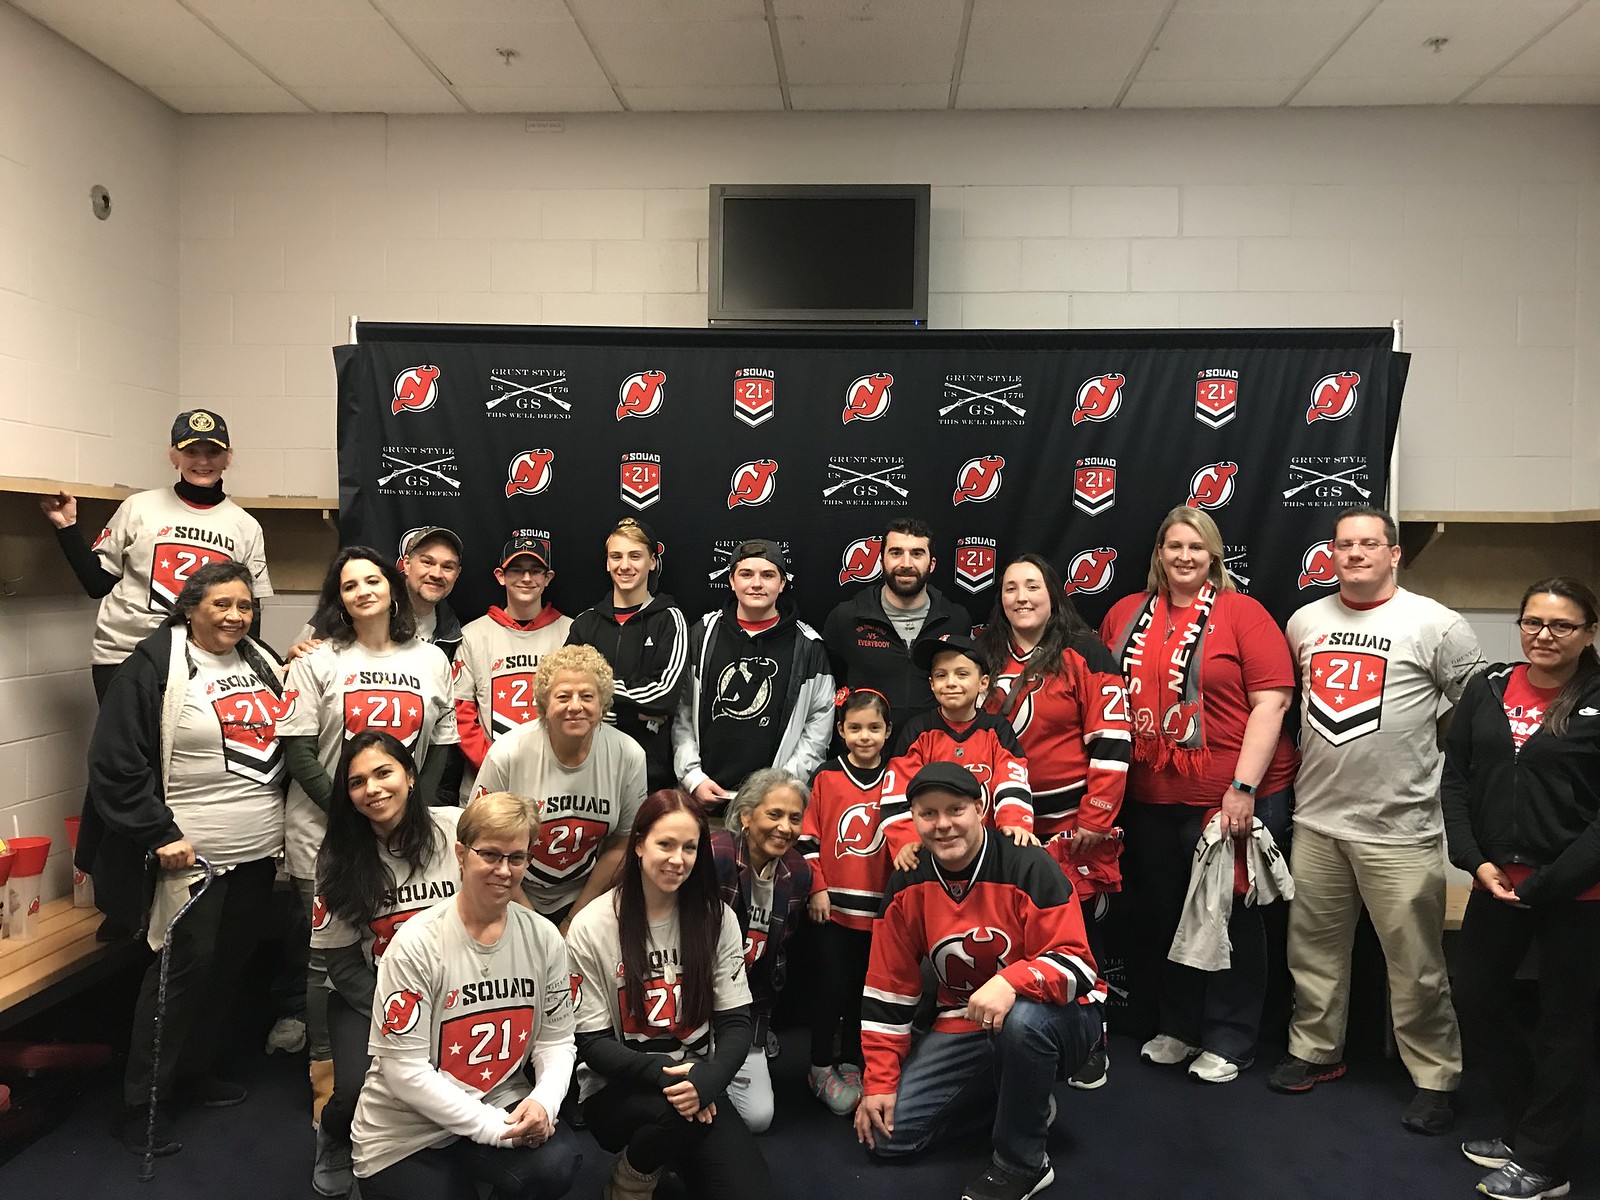 2018_T4T_NJ Devils Squad 21_ 8